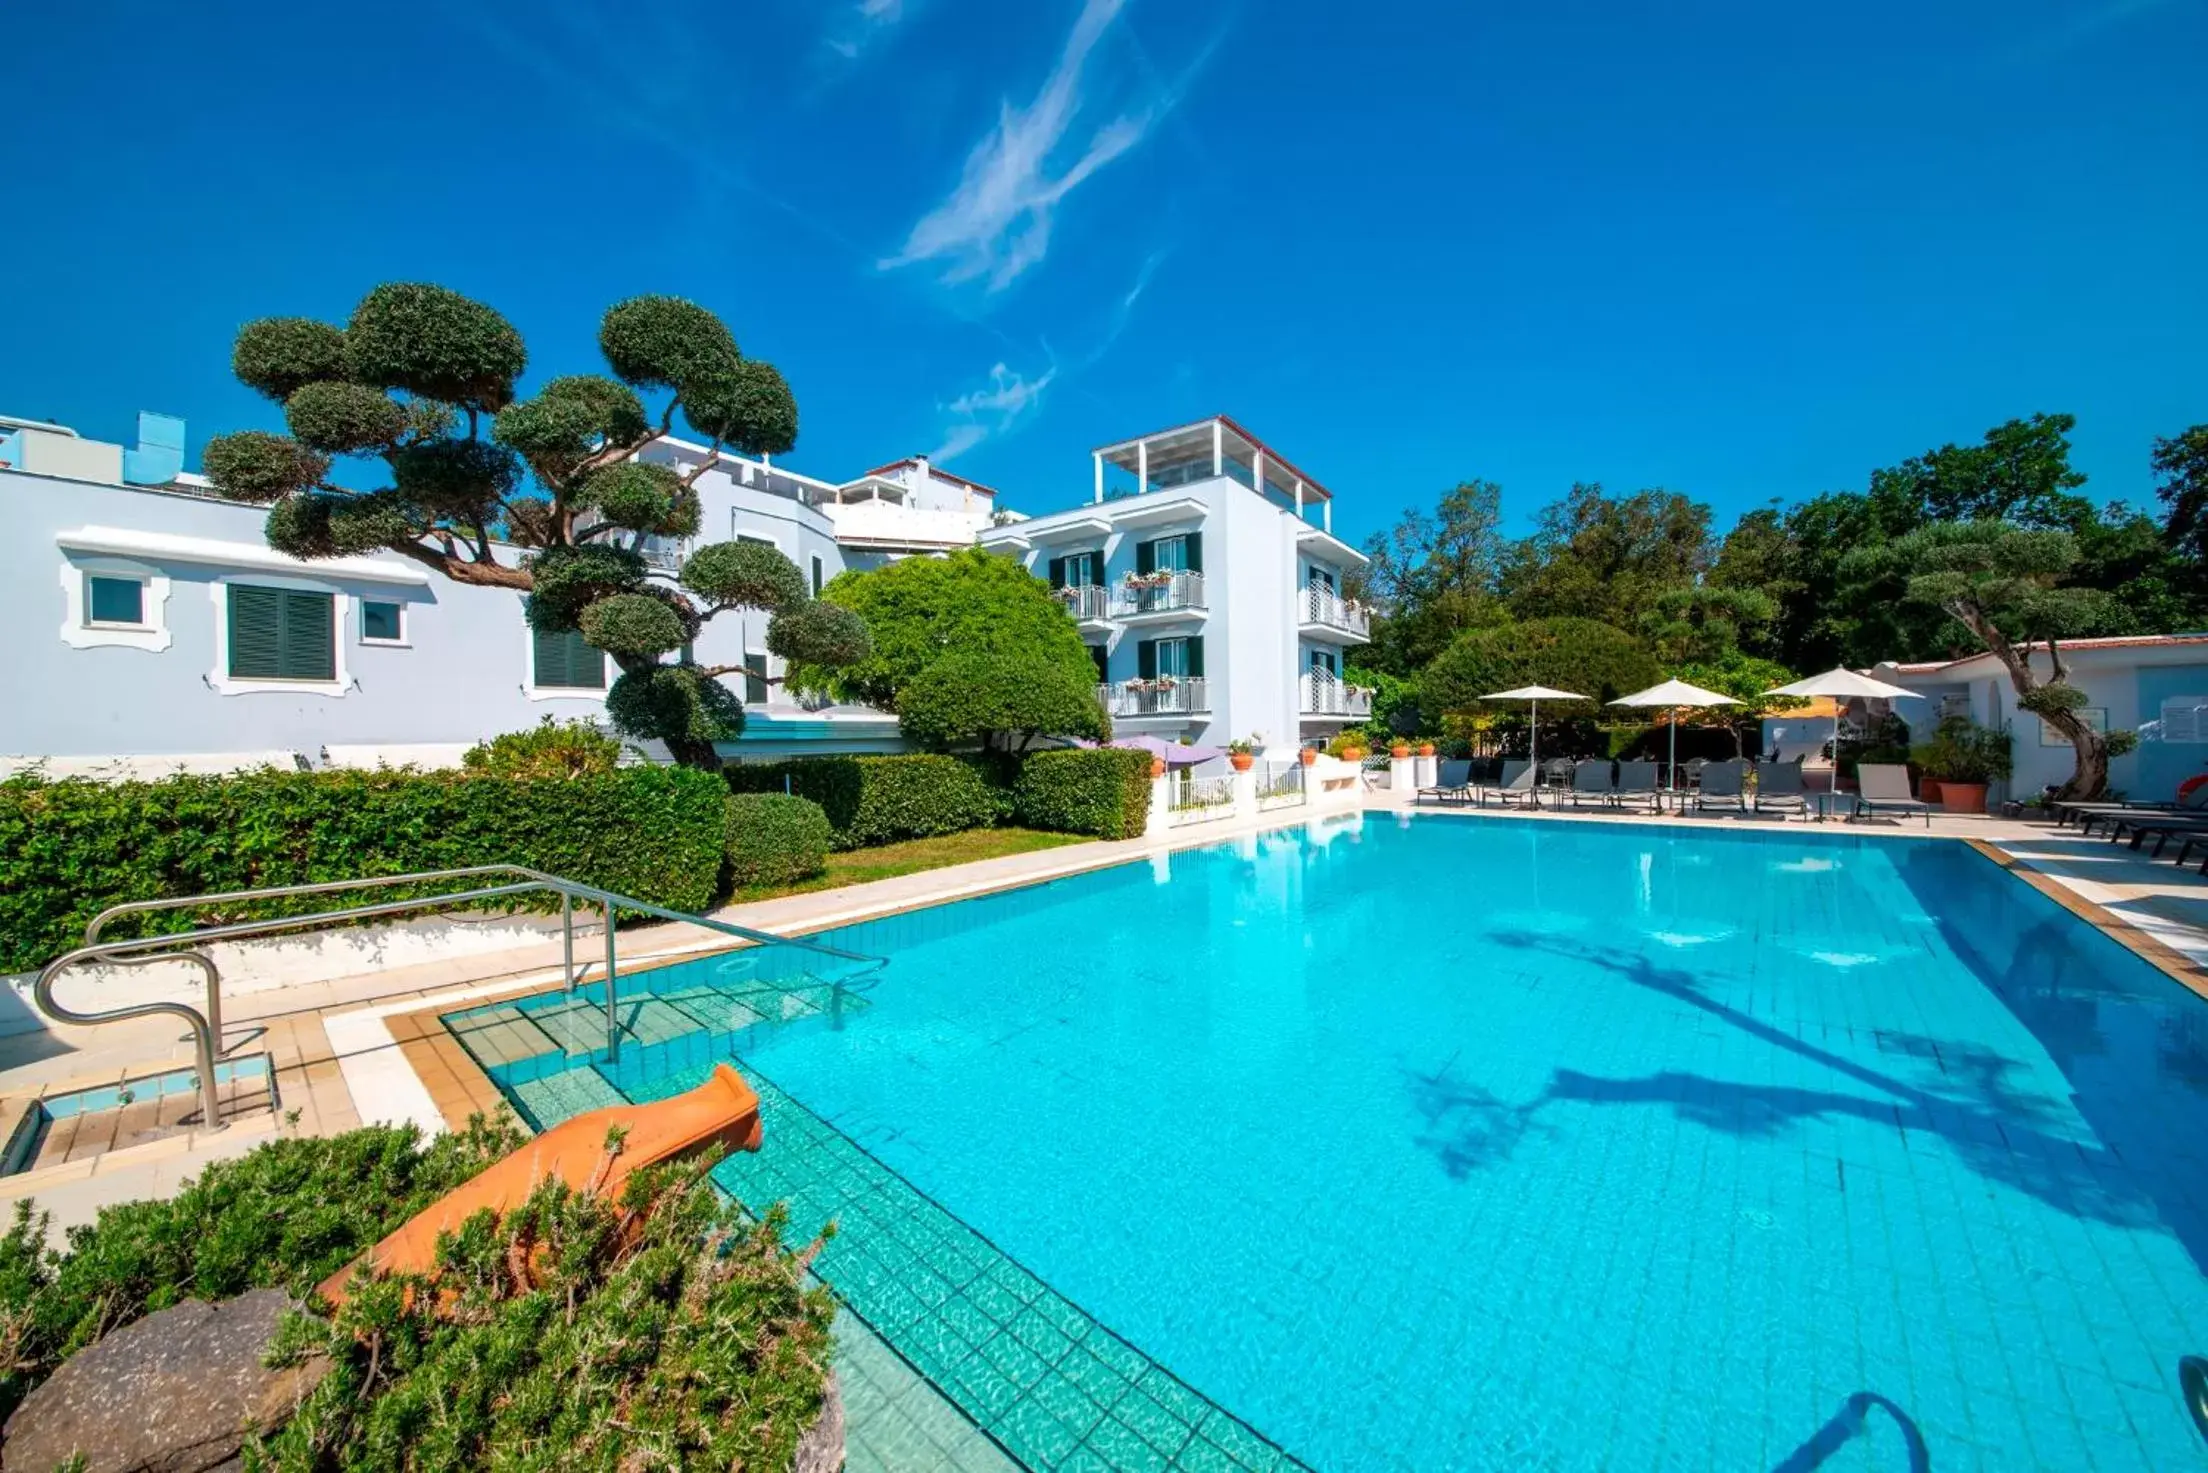 Swimming pool in Hotel Villa Durrueli Resort & Spa